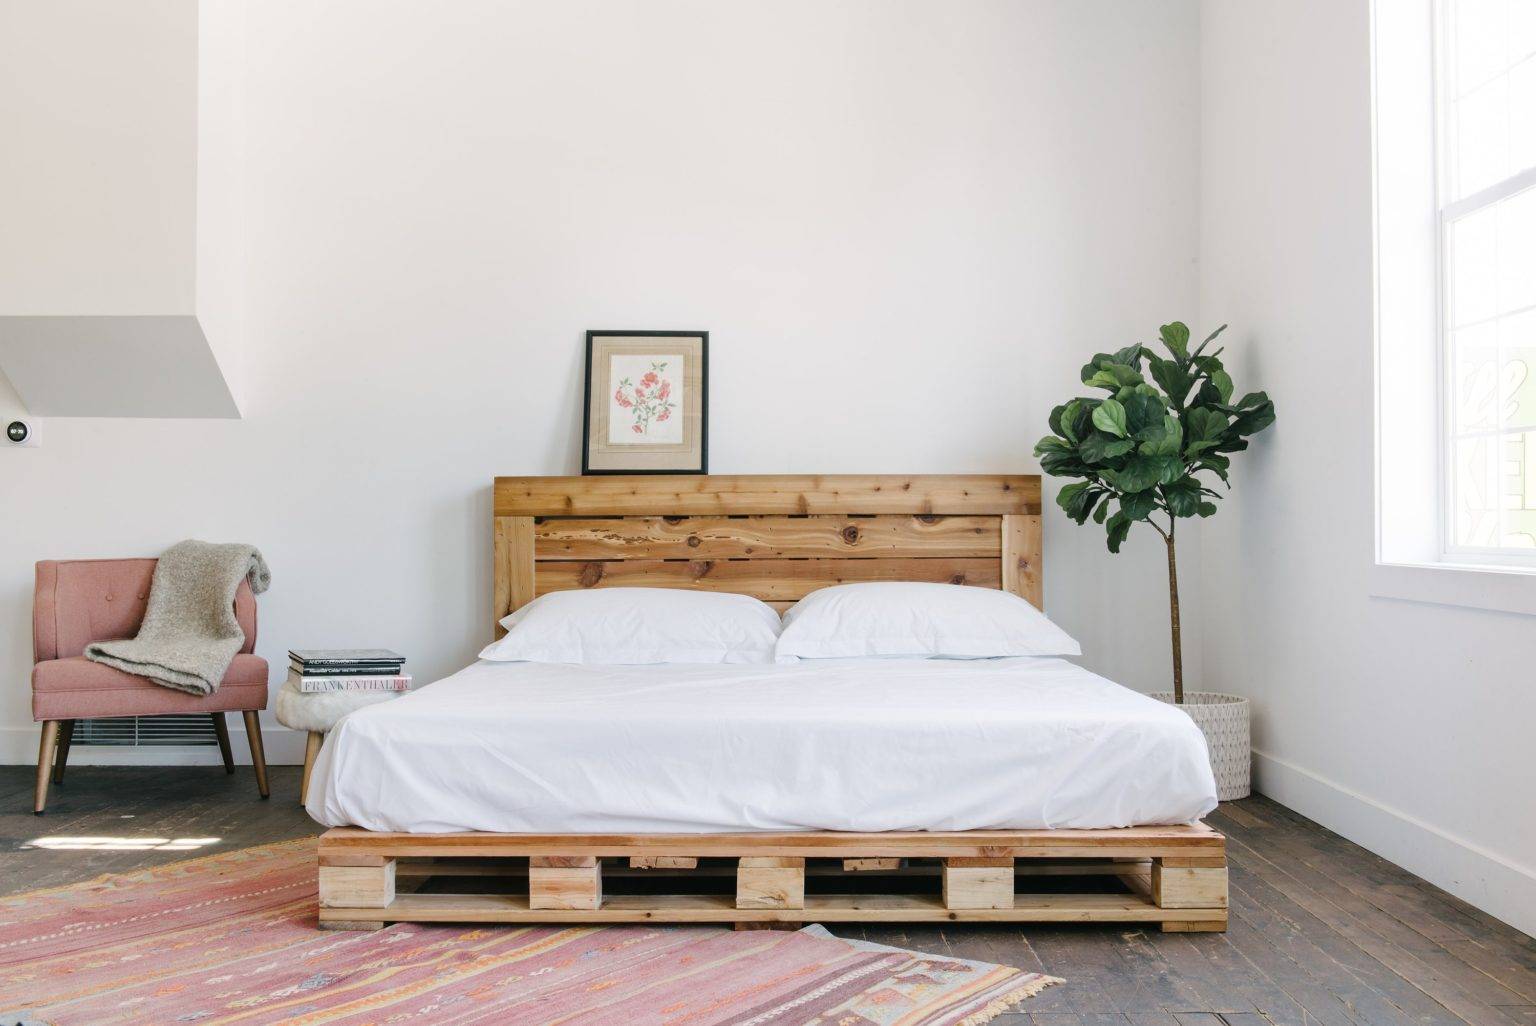 Những ý tưởng thú vị giúp phòng ngủ thêm ấn tượng với giường pallet tự chế - Ảnh 2.